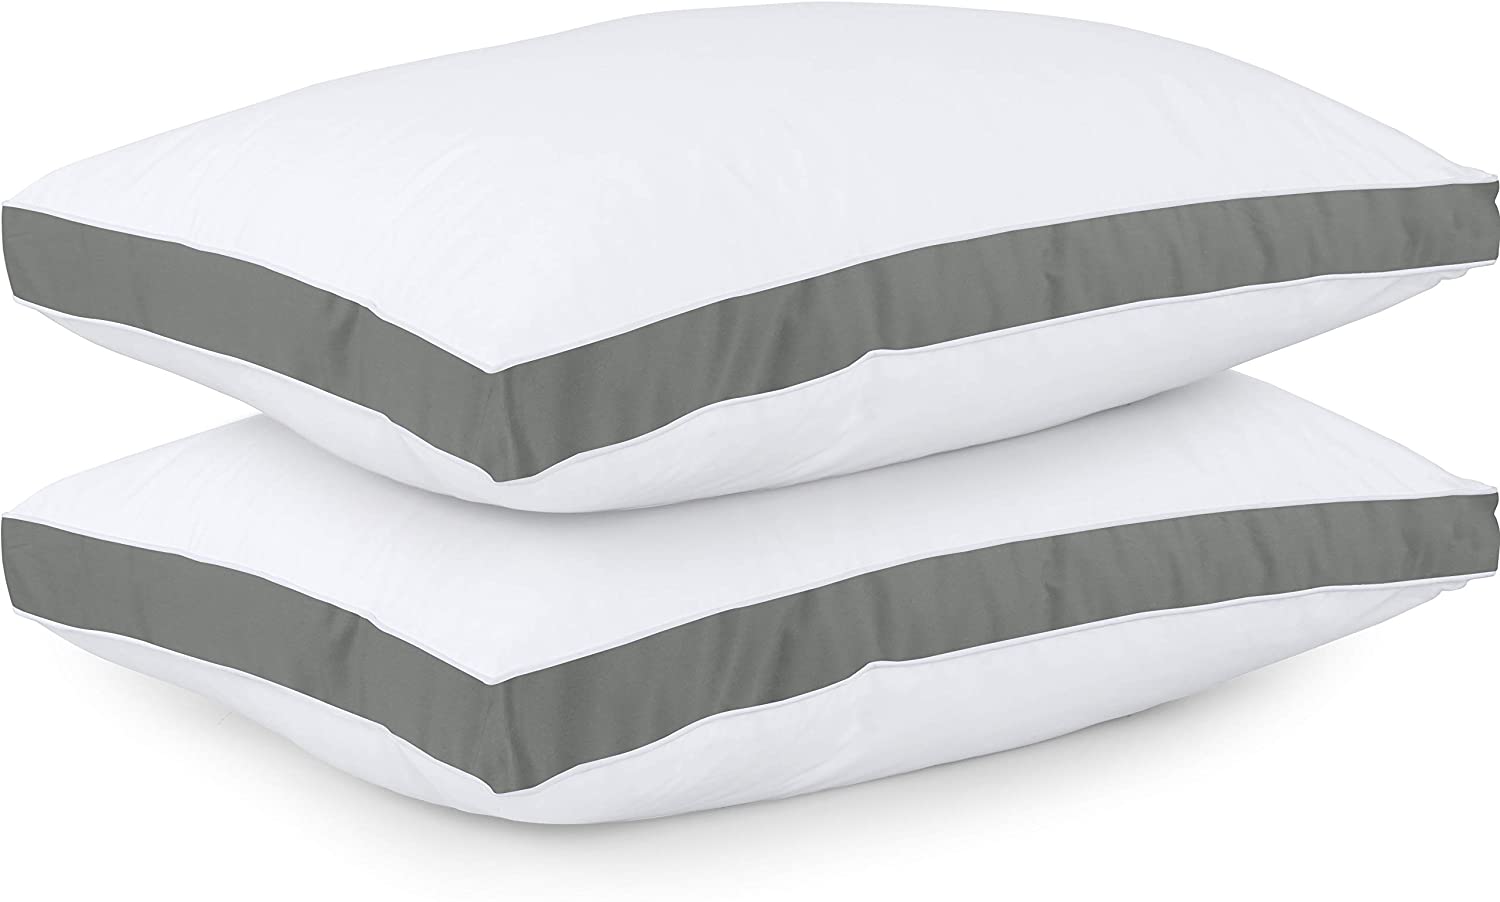 Utopia Bedding Throw Pillows (Set of 4, White), 18 x 18 Inches